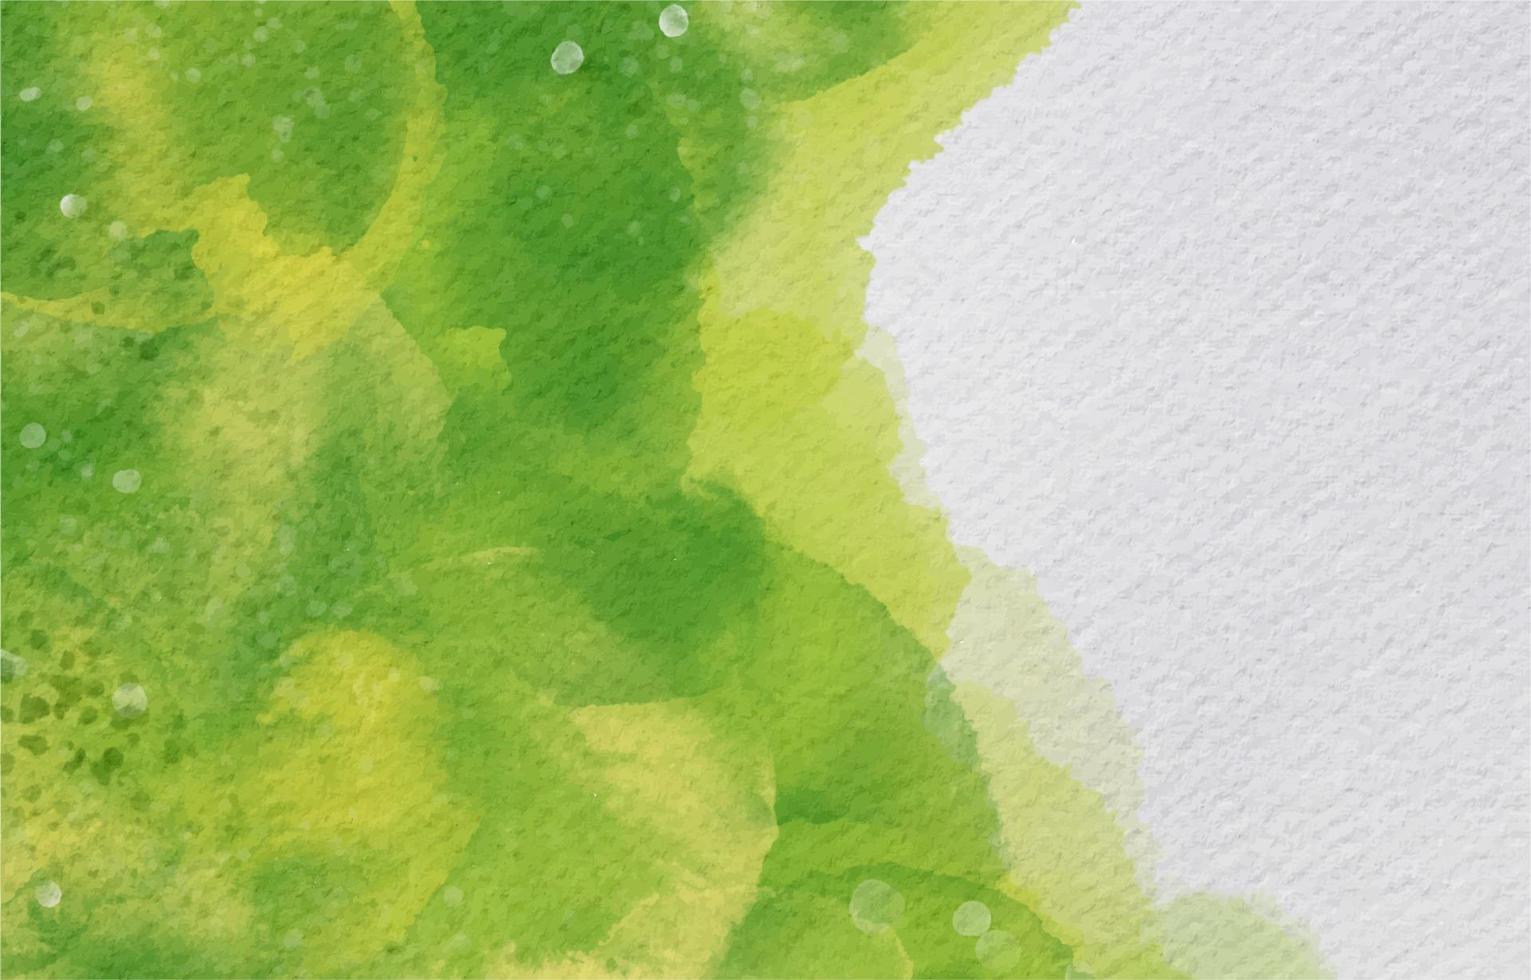 sfondo verde organico in stile acquerello vettore